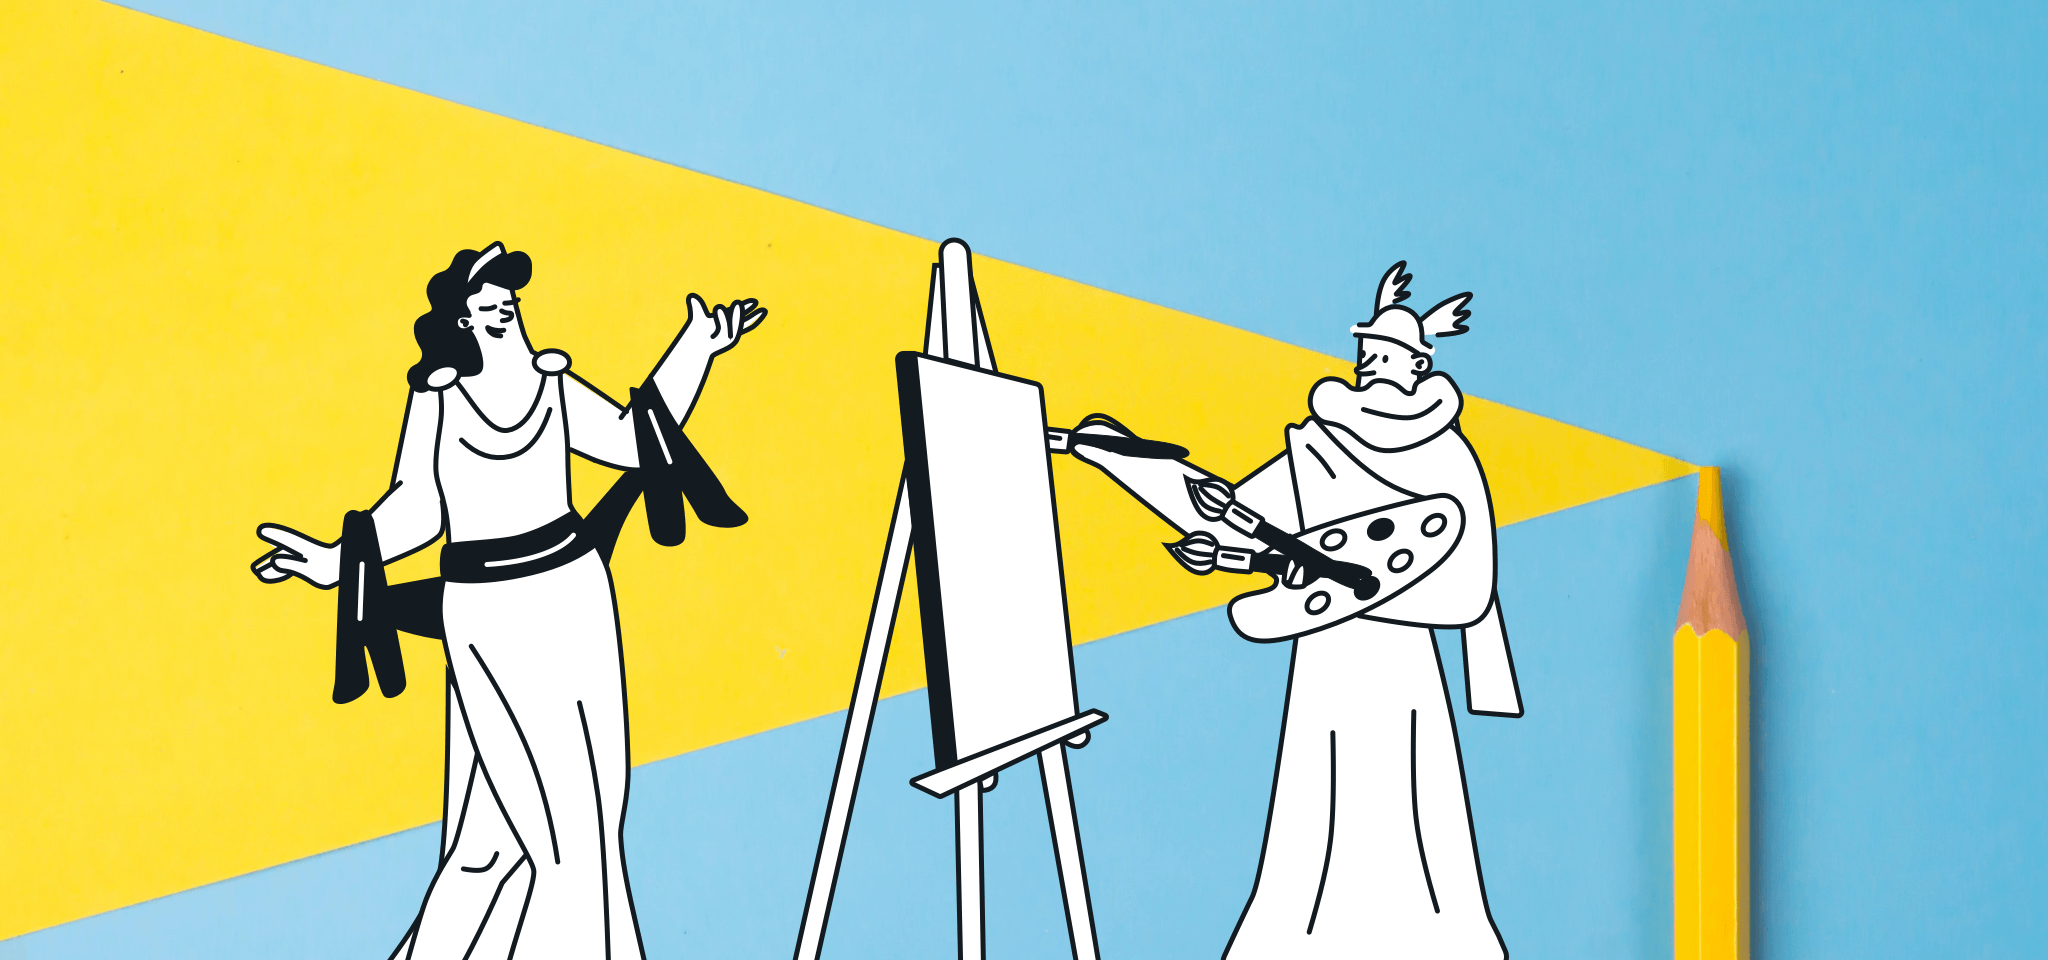 Hermes pinta a una diosa sobre amarillo y azul